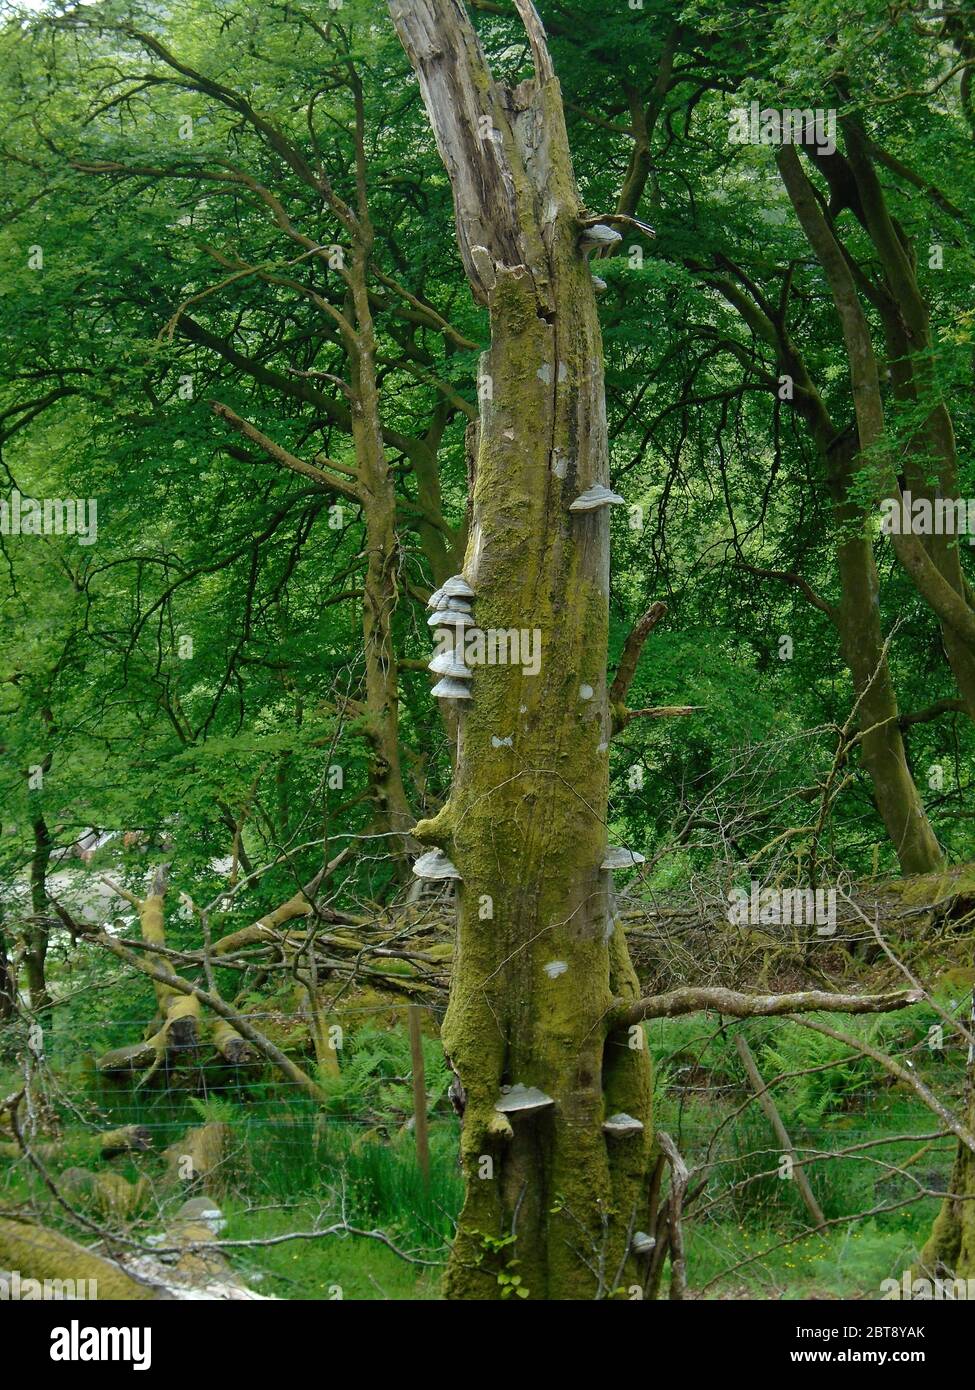 Champignon de l'hof/Tinder (Fomes fomentarius) sur un arbre mort sur la route de la montagne écossaise Corbett 'meall an Fhudair' Glen Falloch, Écosse, Royaume-Uni. Banque D'Images